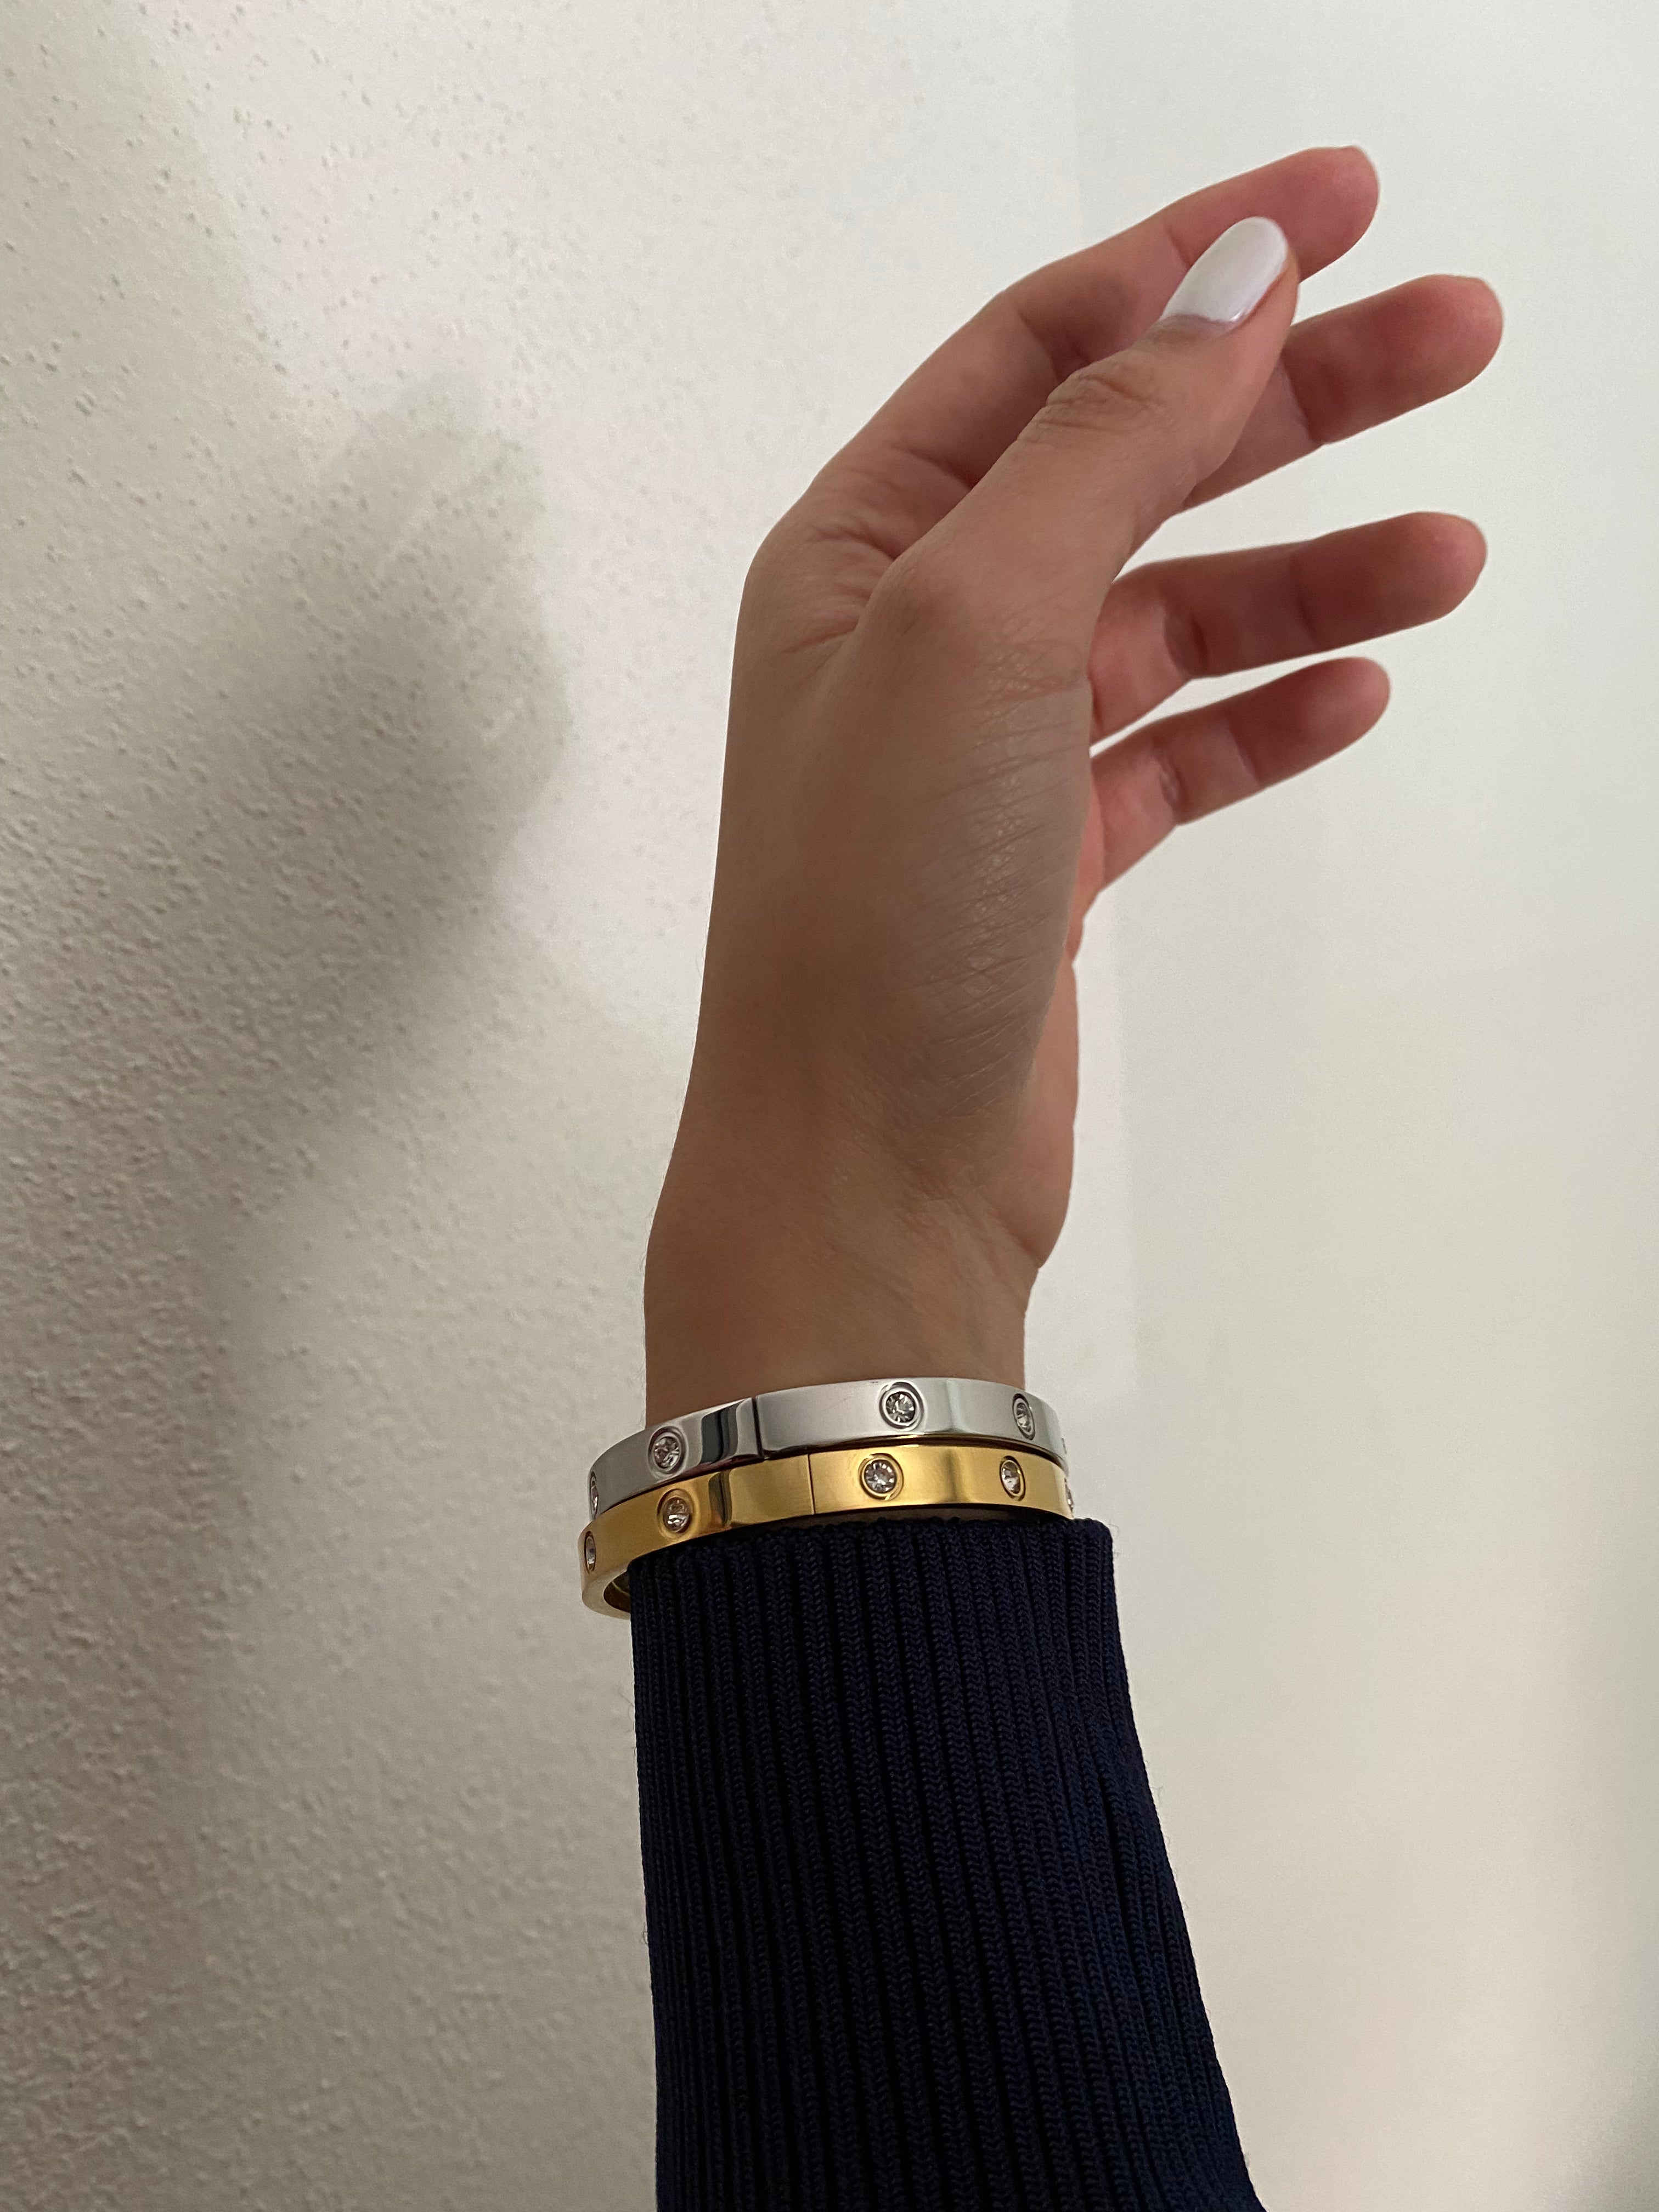 Marcel bracelet - silver